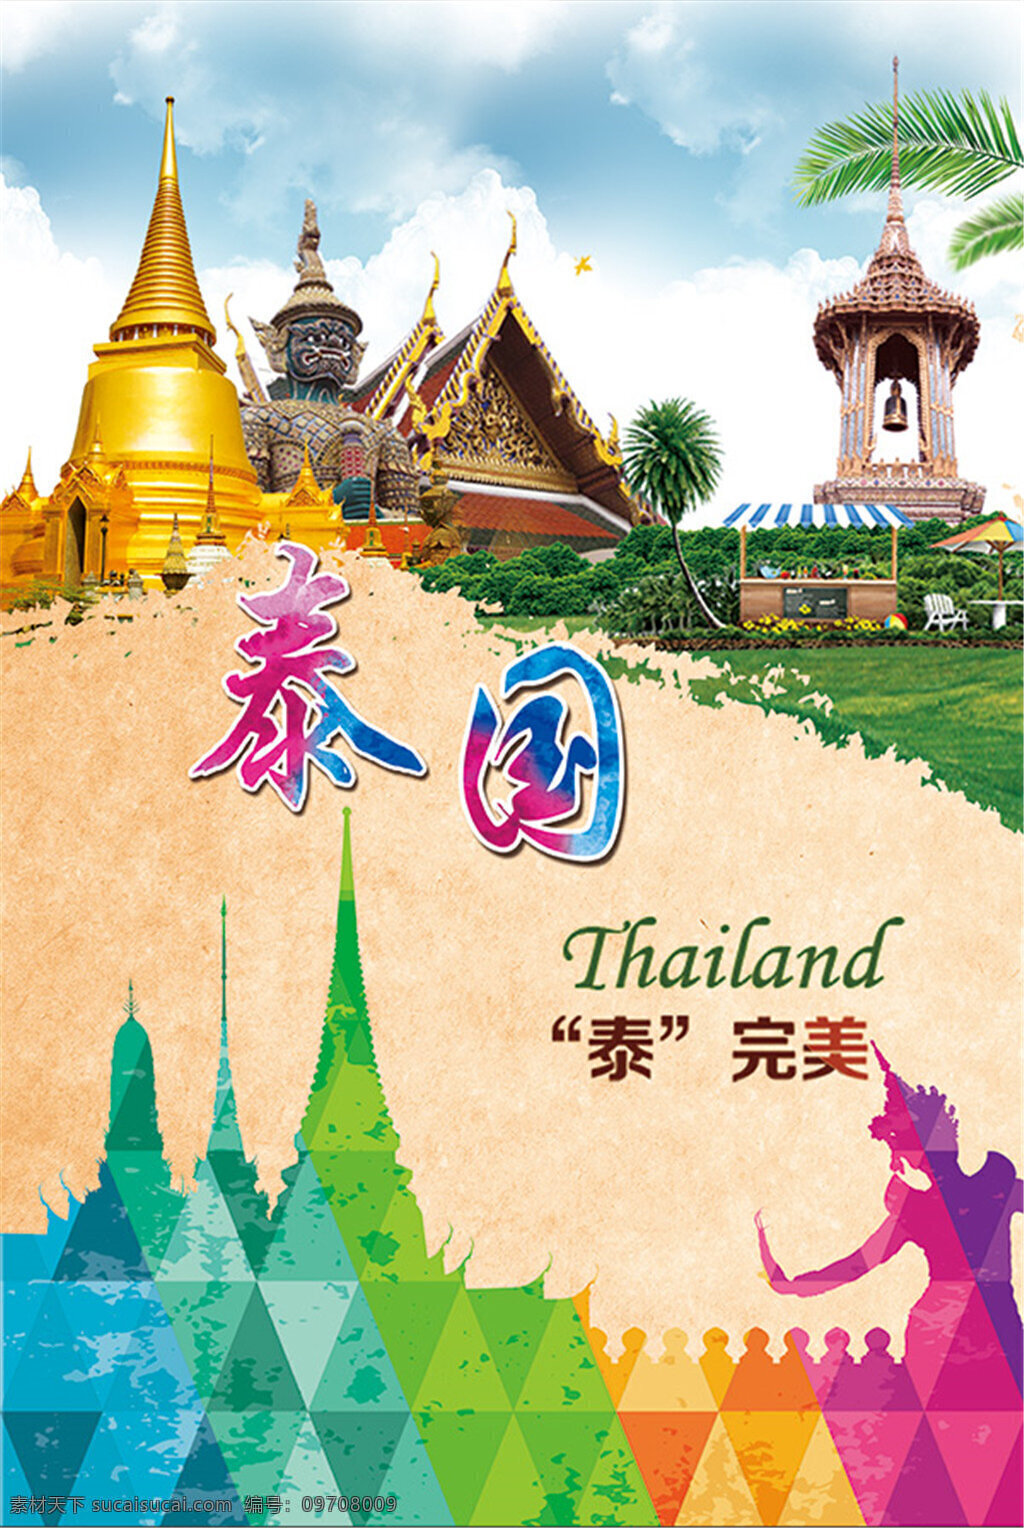 泰国 旅游 宣传海报 泰国旅游海报 旅游广告 泰国素材 泰国元素 泰国建筑 地标 建筑 泰国风光 泰国风景 大皇宫 黄色